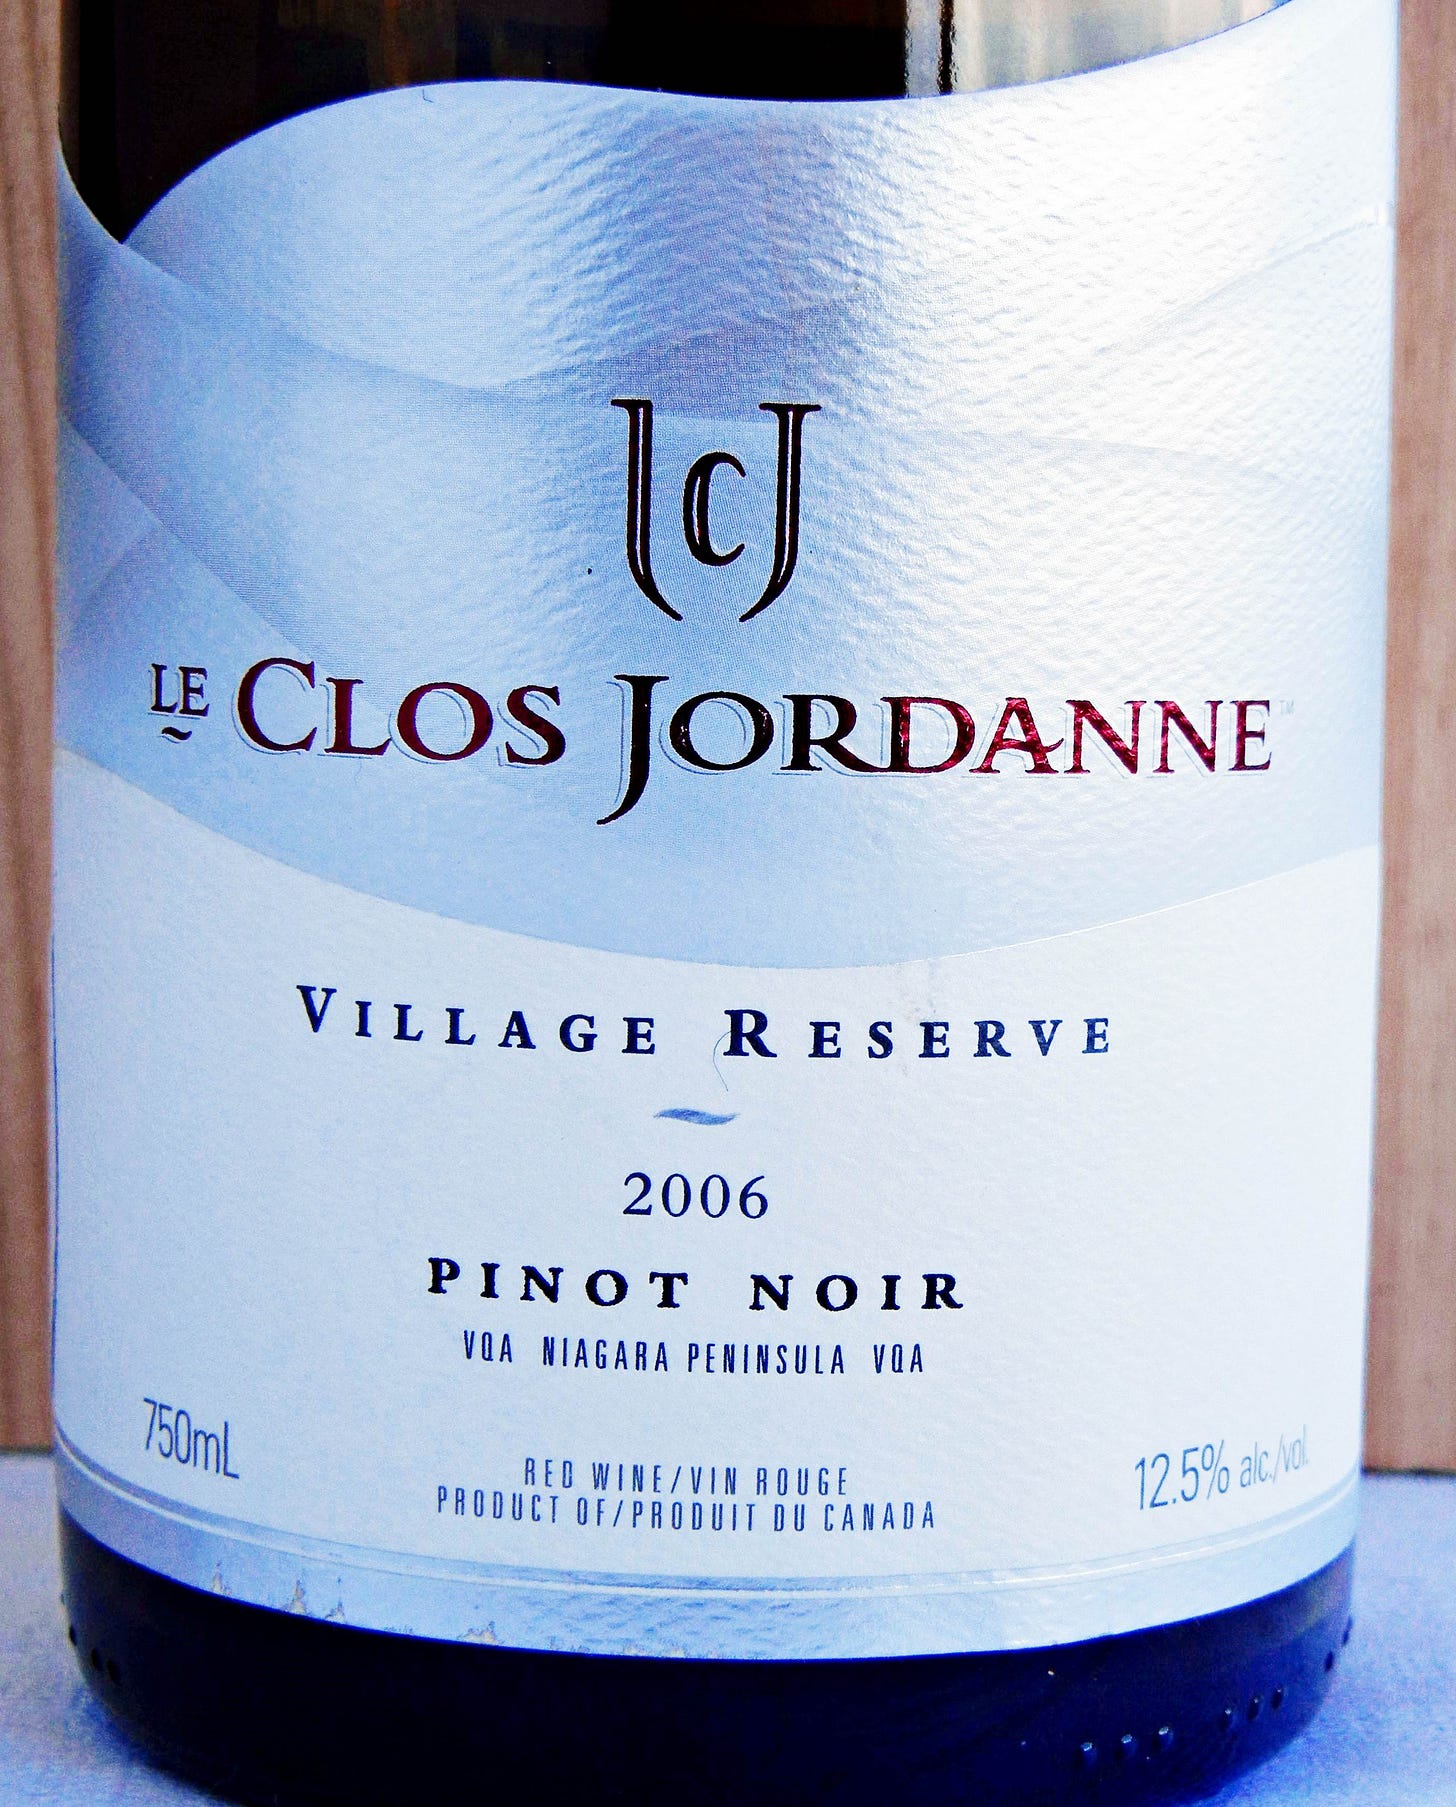 Le Clos Jordanne Village Reserve Pinot Noir 2006 Label - BC Pinot Noir Tasting Review 12